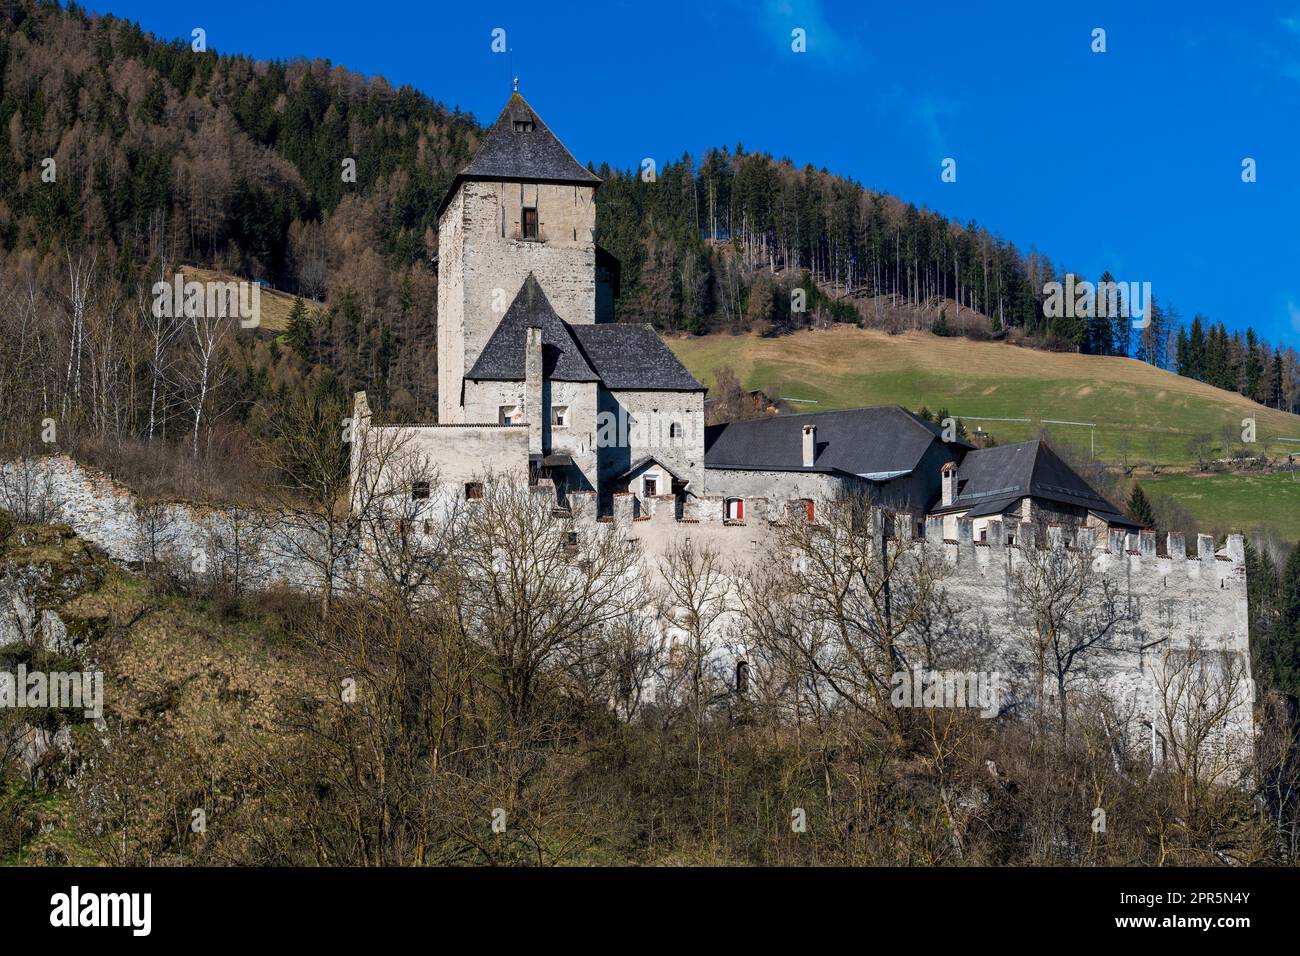 Castello di Reifenstein (Castel tasso), Freienfeld-campo di Trens, Trentino-Alto Adige/Sudtirol, Italia Foto Stock